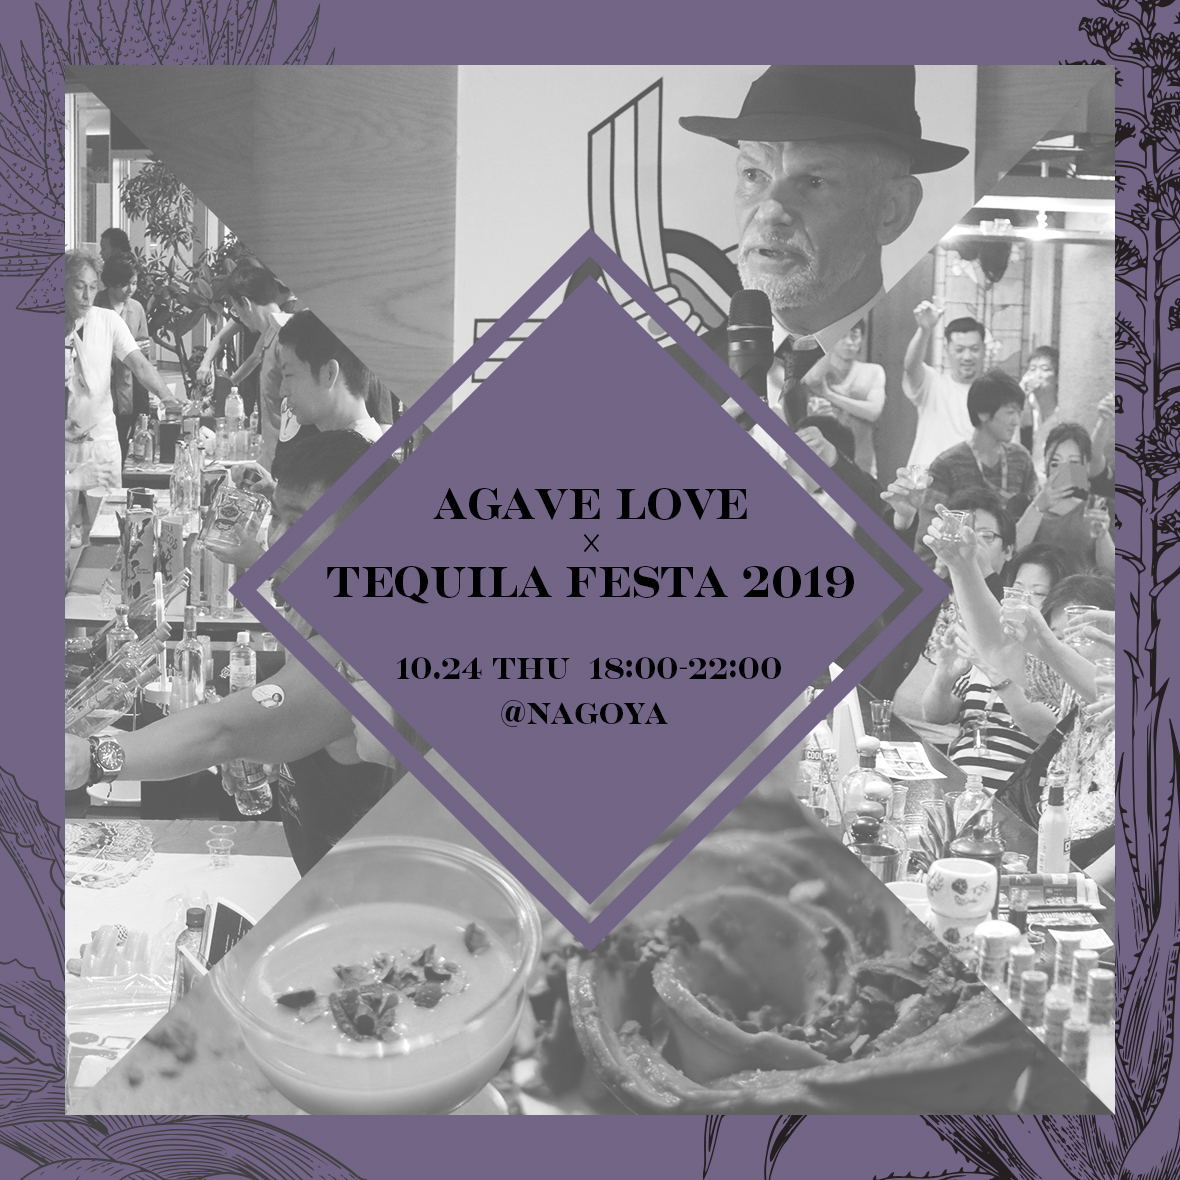 AGAVE LOVE × TEQUILA FESTA 2019 in NAGOYA